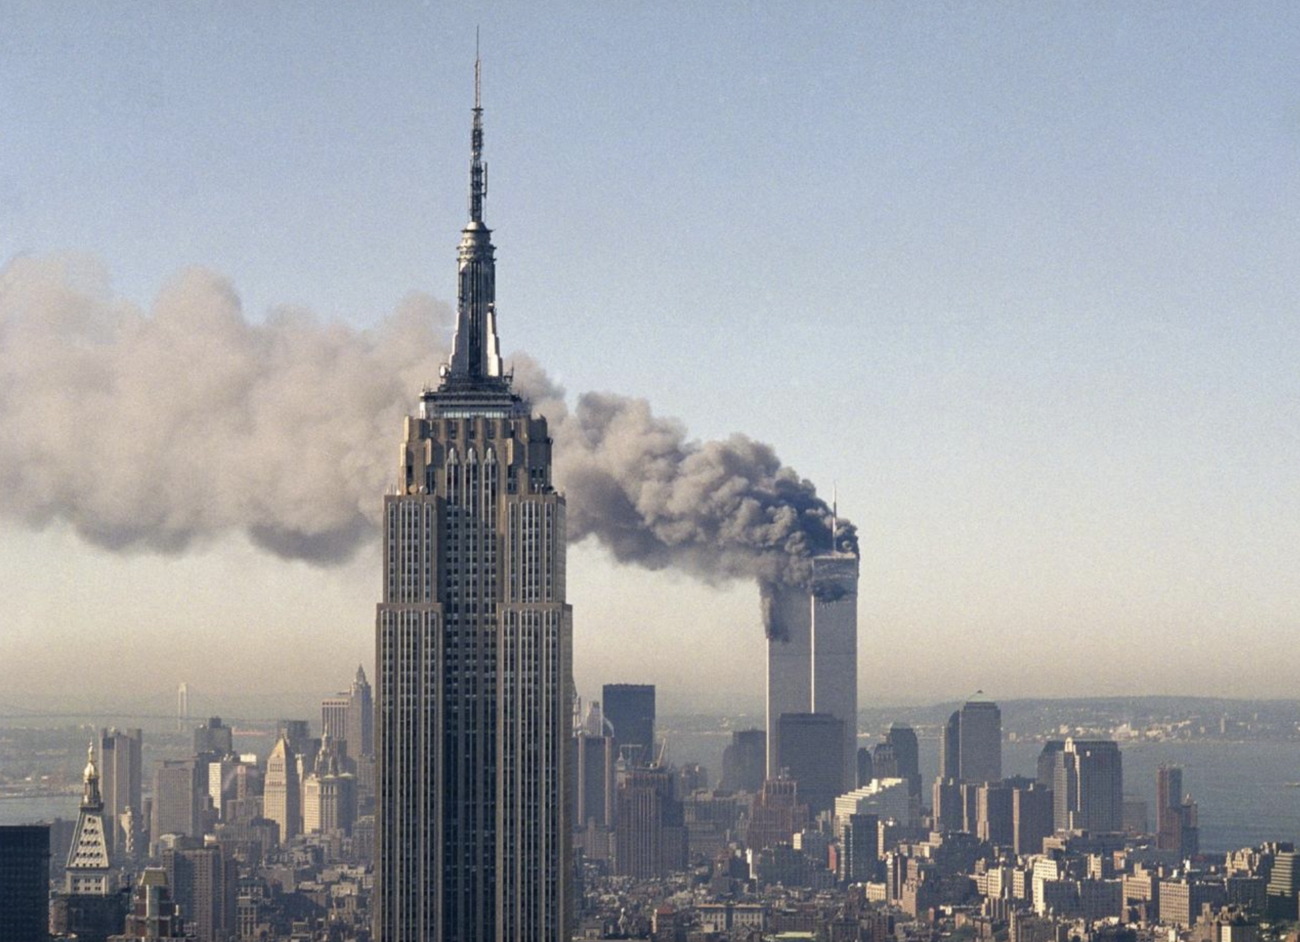 【9.11は中共のテロだった!!】新庄剛志、9.11発生時に『ワールドトレードセンター』周辺には旅客機の破片が一つもなかったと証言